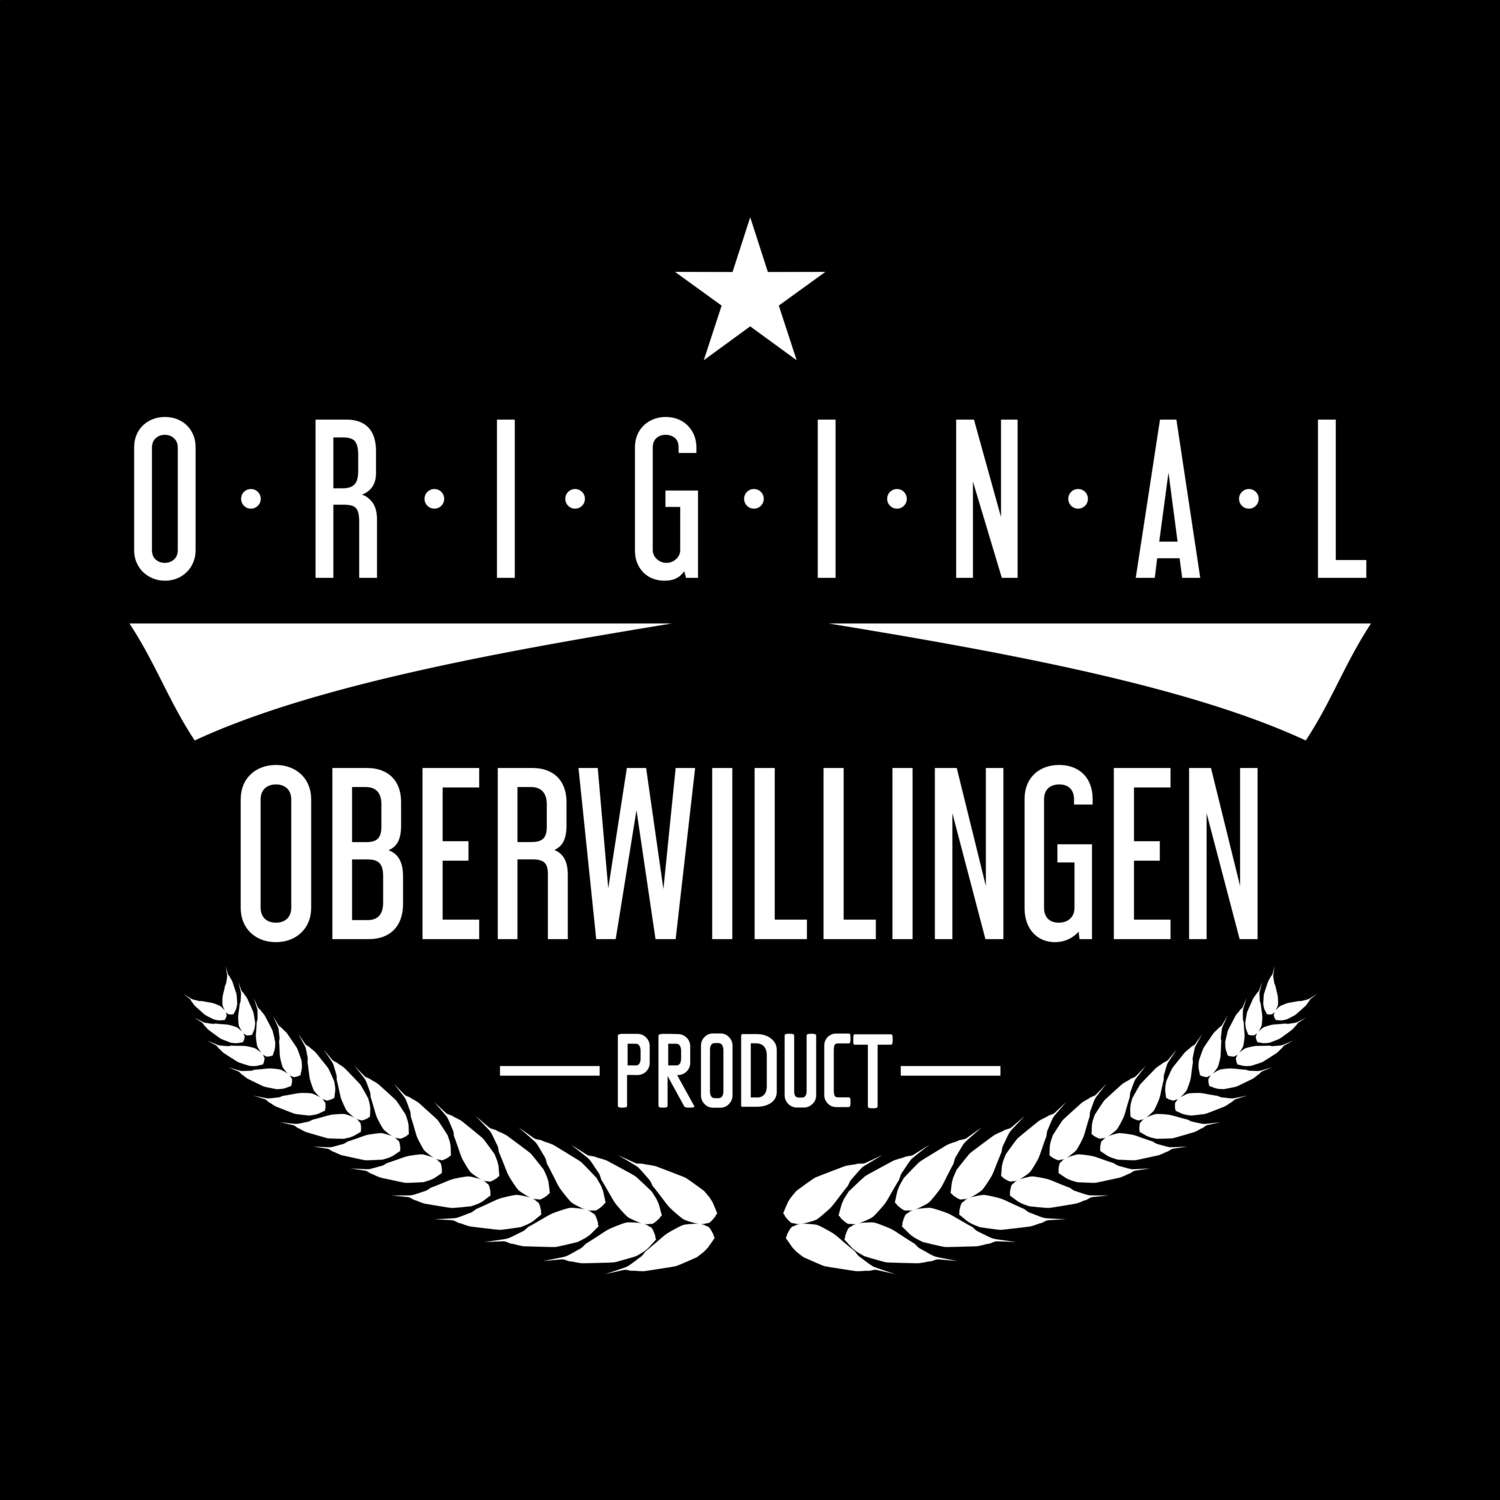 Oberwillingen T-Shirt »Original Product«